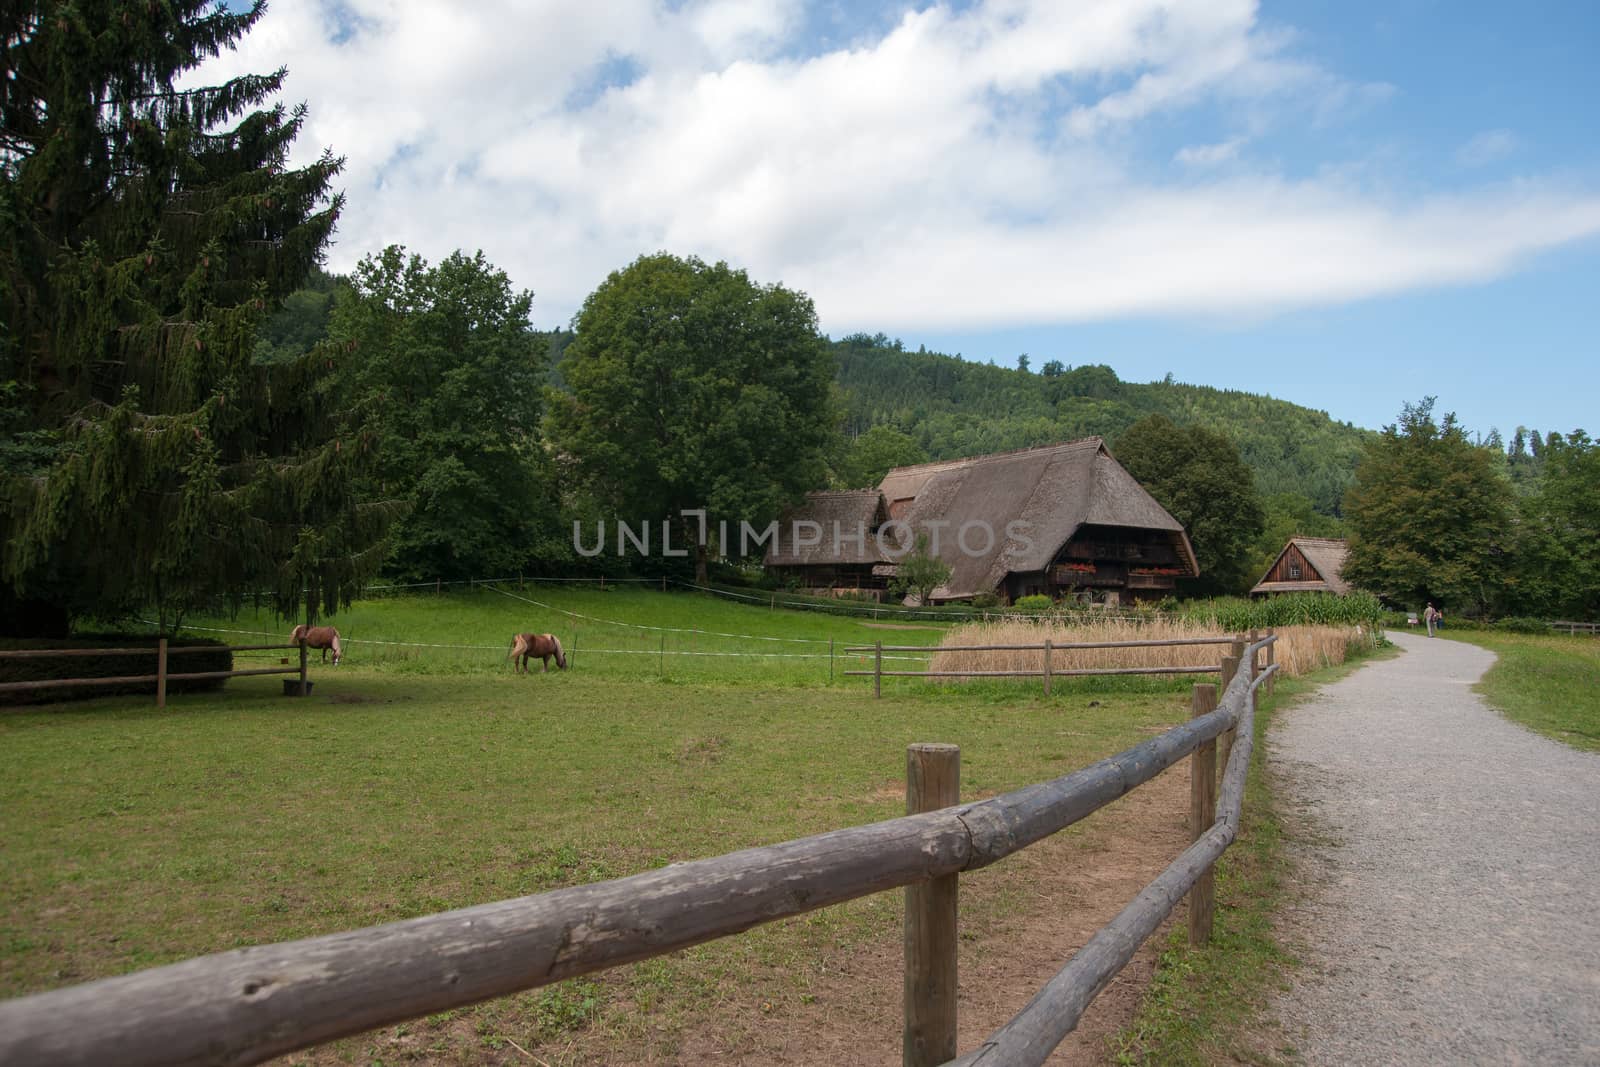 schwarzwald forest villages landscape in germany tourism